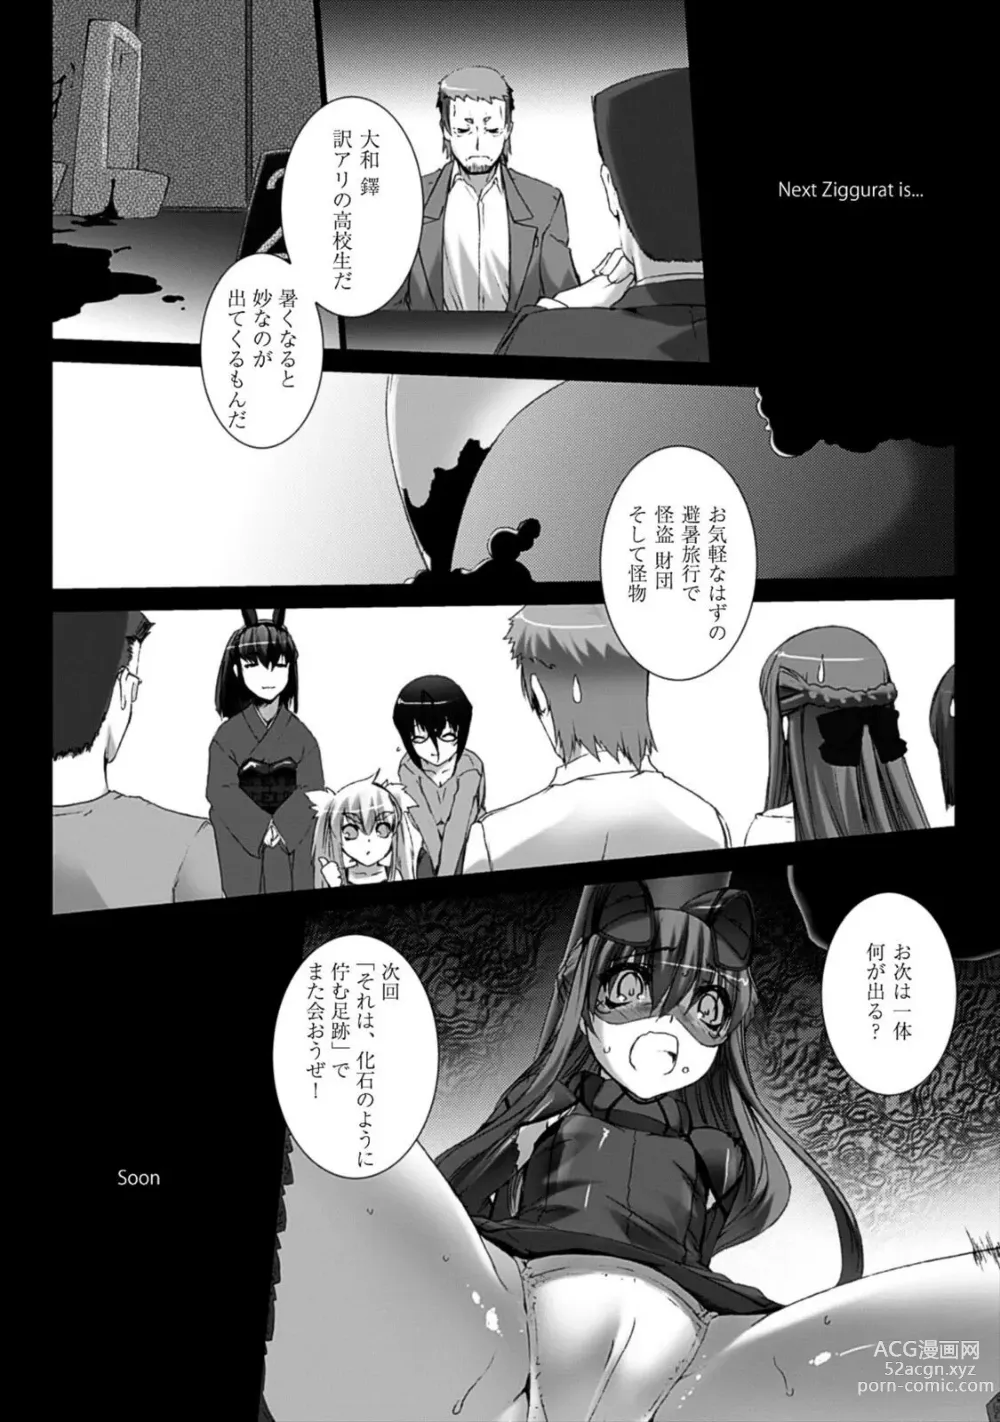 Page 176 of manga Ziggurat 4